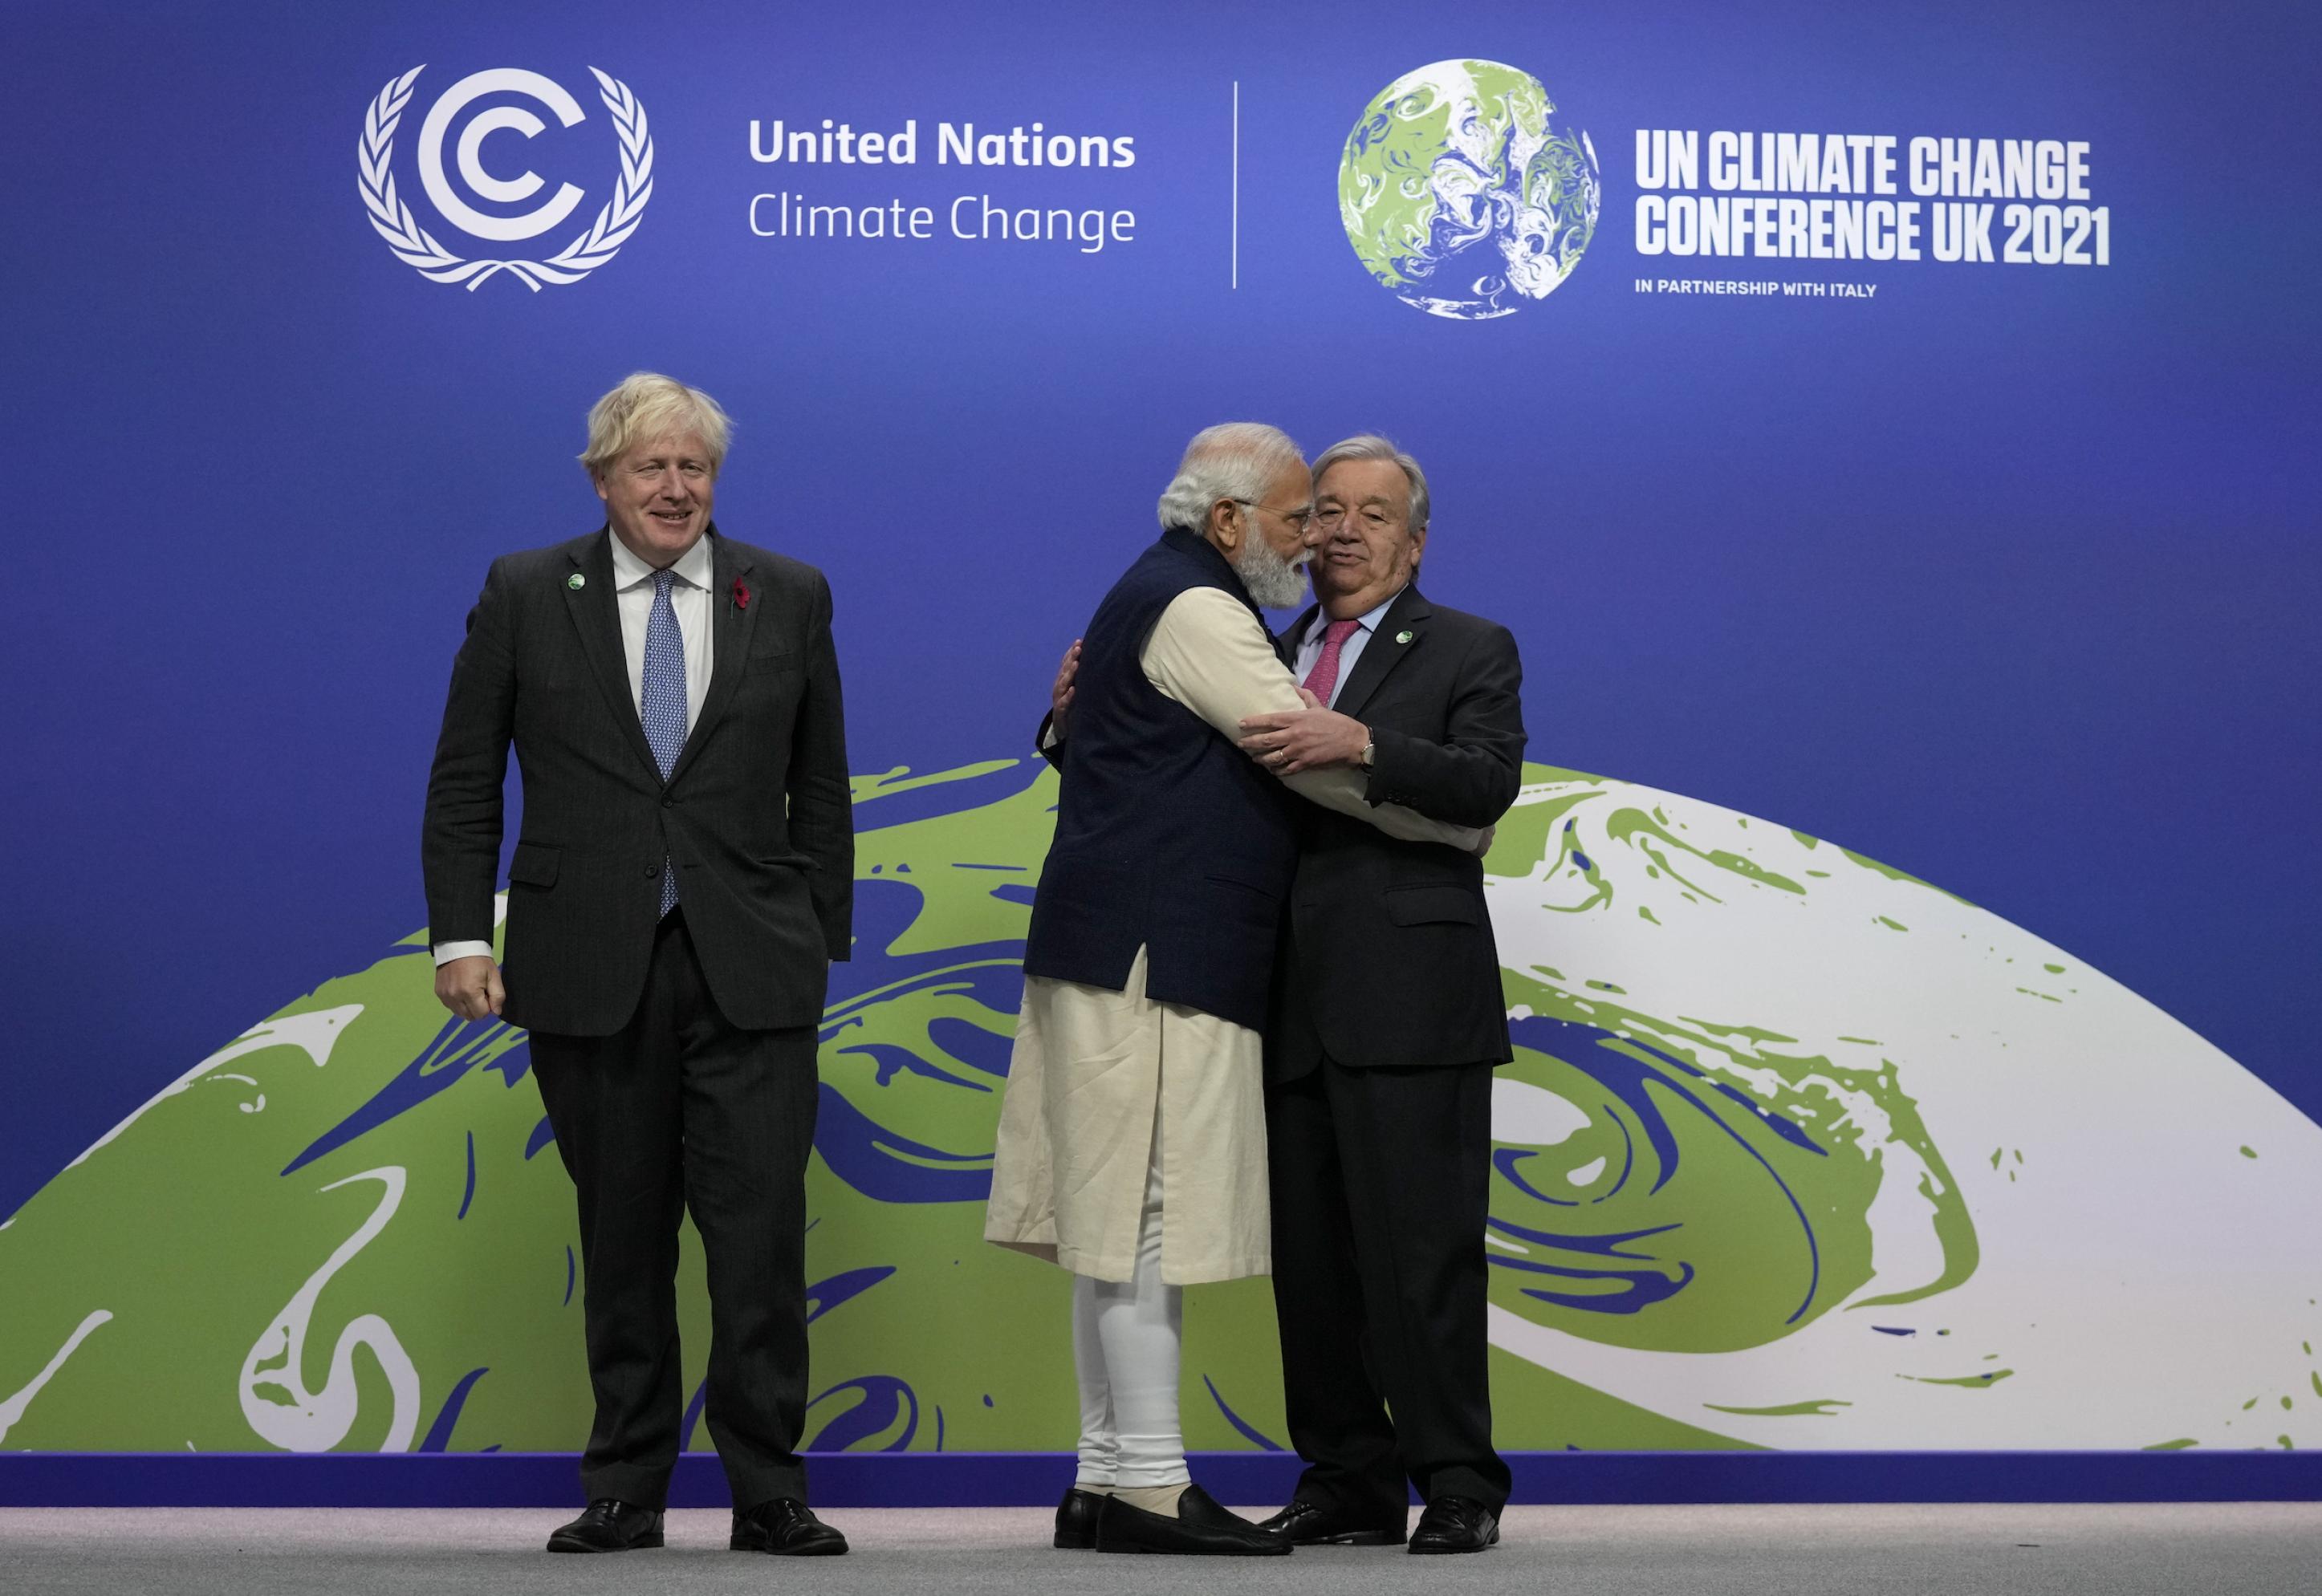 Boris Johnson, UN-Generalsekretär Antonio Guterres und der indische Premier Narendra Modi auf der Bühne. Modi umarmt Guterres, der davon überrascht zu sein scheint.